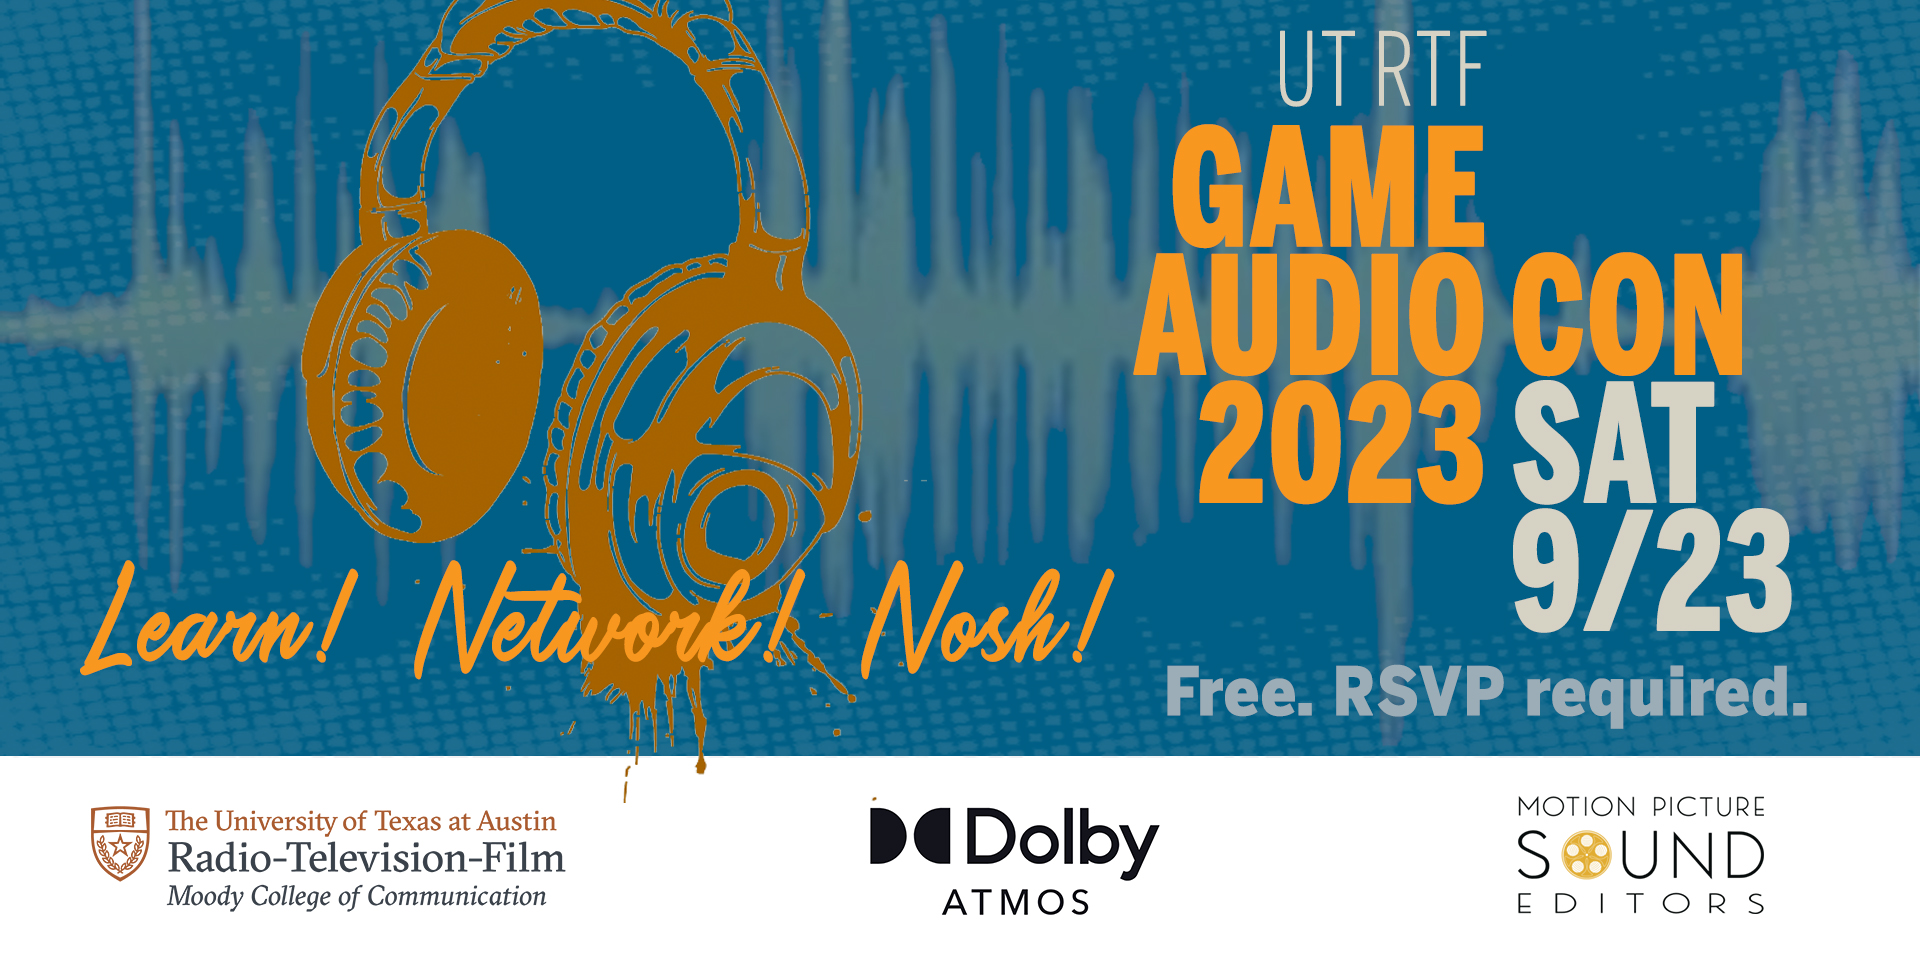 UT RTF Game Audio Con 2023